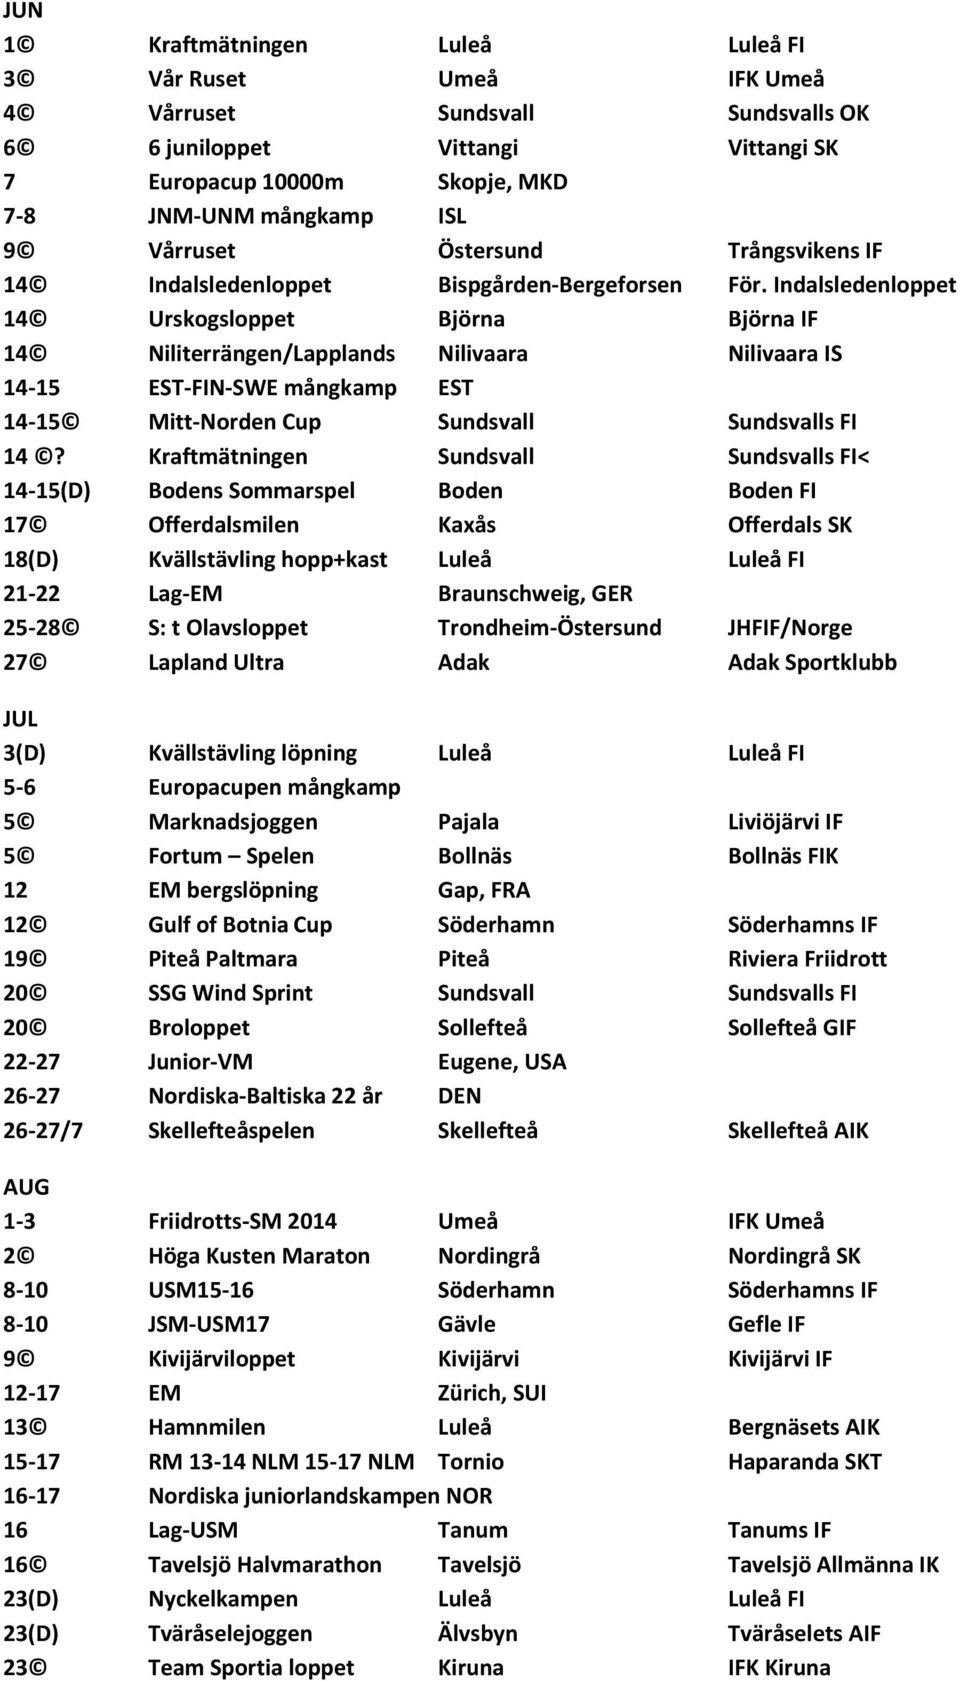 Indalsledenloppet 14 Urskogsloppet Björna Björna IF 14 Niliterrängen/Lapplands Nilivaara Nilivaara IS 14-15 EST-FIN-SWE mångkamp EST 14-15 Mitt-Norden Cup Sundsvall Sundsvalls FI 14?